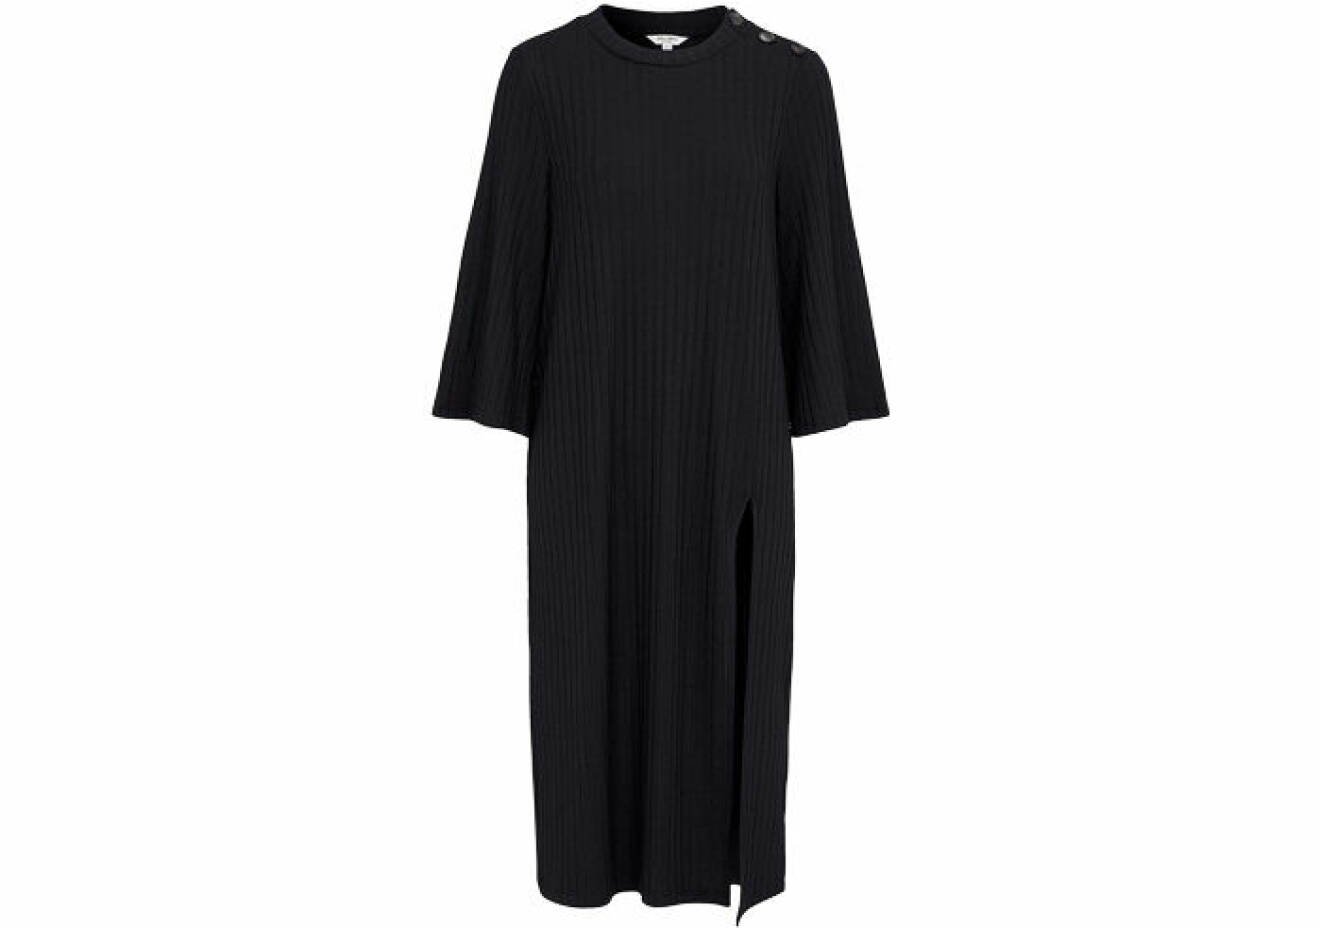 långärmad svart klänning med rak och ledig passform från Cellbes att bära i höst